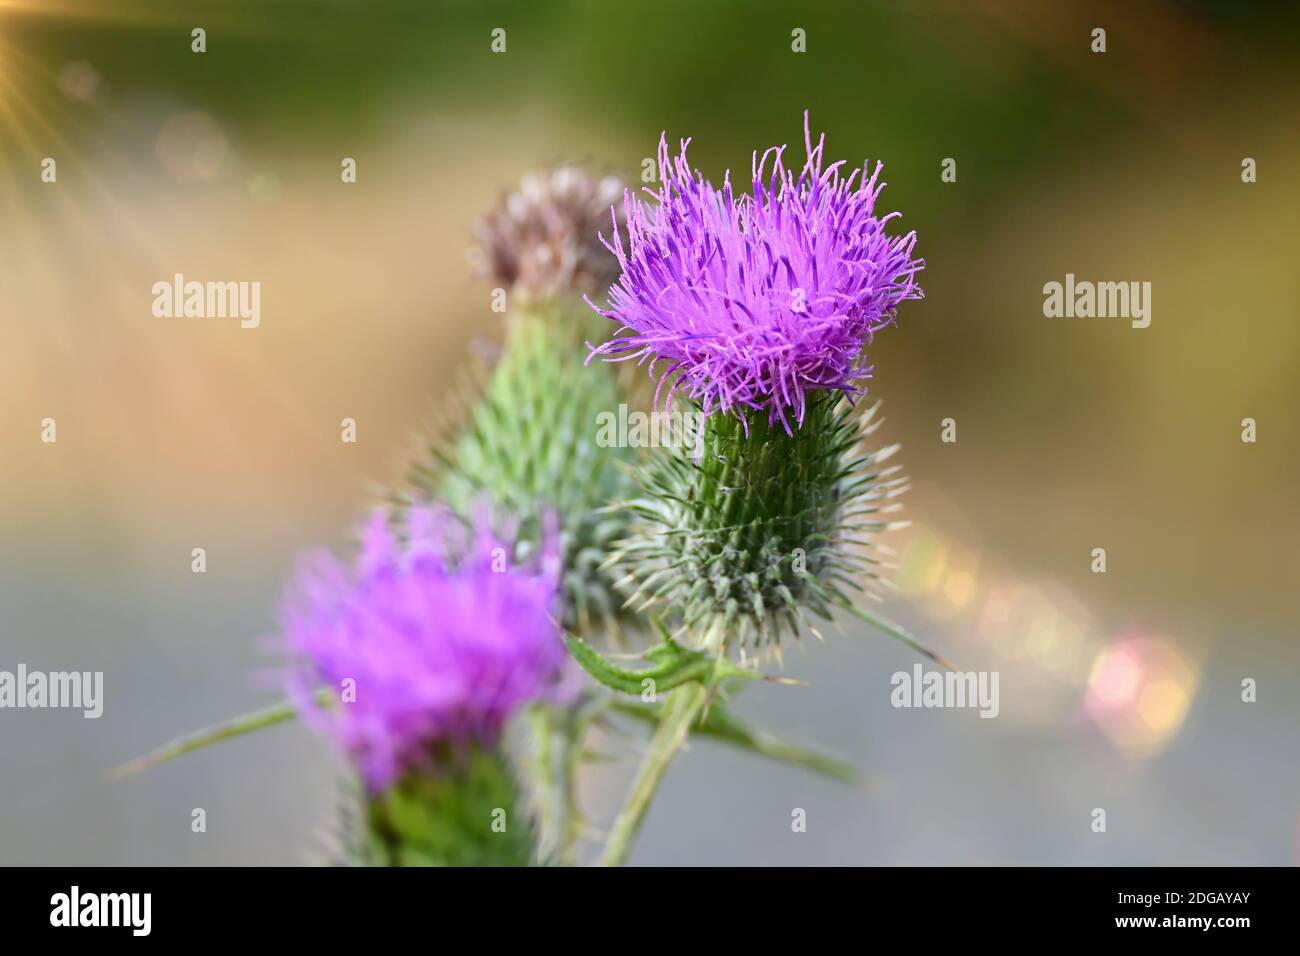 Schöne Distel blühende Pflanze in Nahaufnahme mit weichem Bokeh Hintergrund. Stockfoto